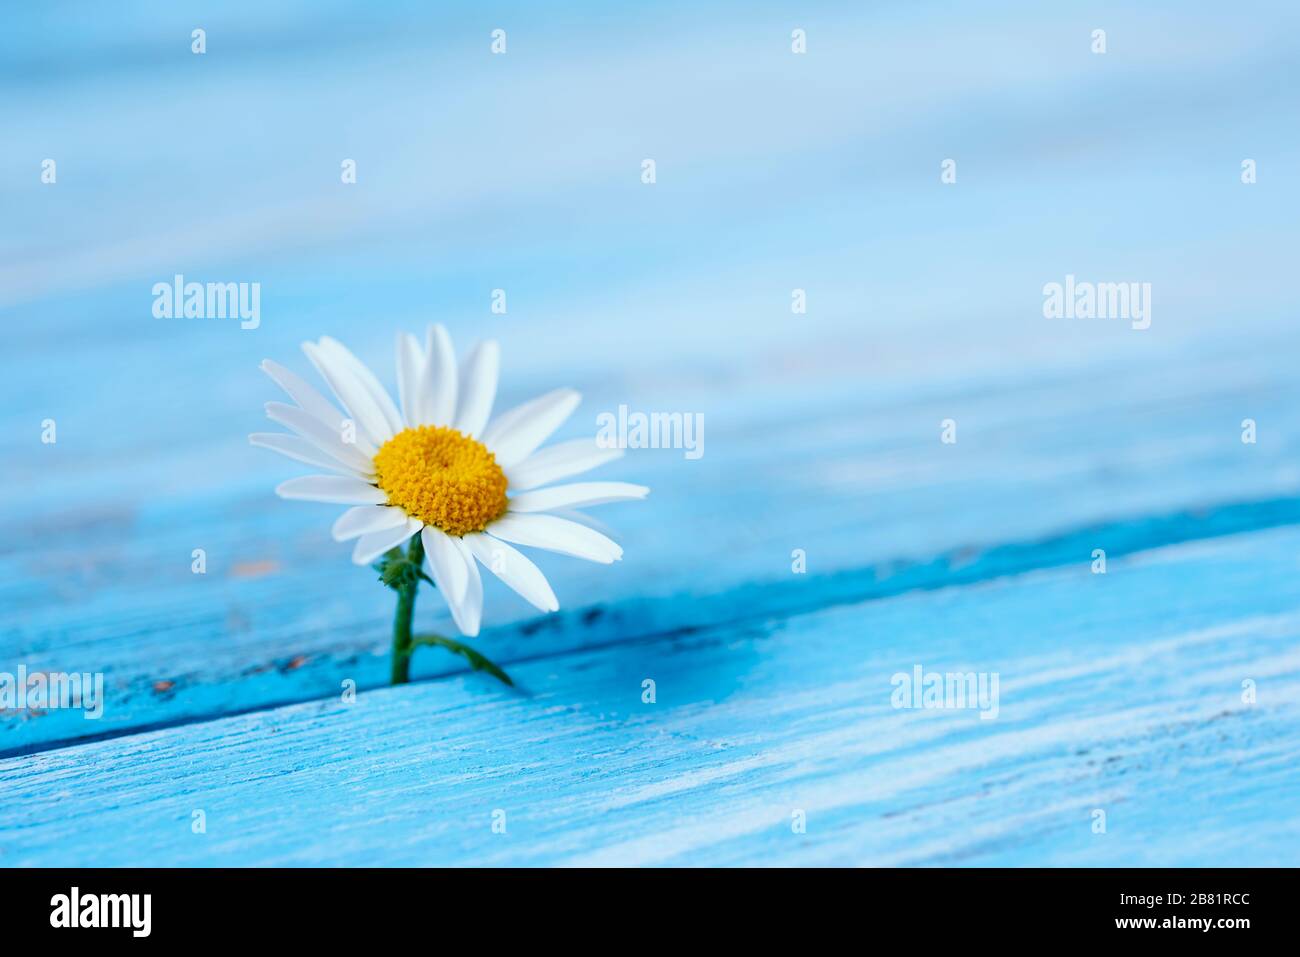 primo piano di un fiore a margherita su una superficie rustica di legno blu con un po' di spazio vuoto sulla destra Foto Stock